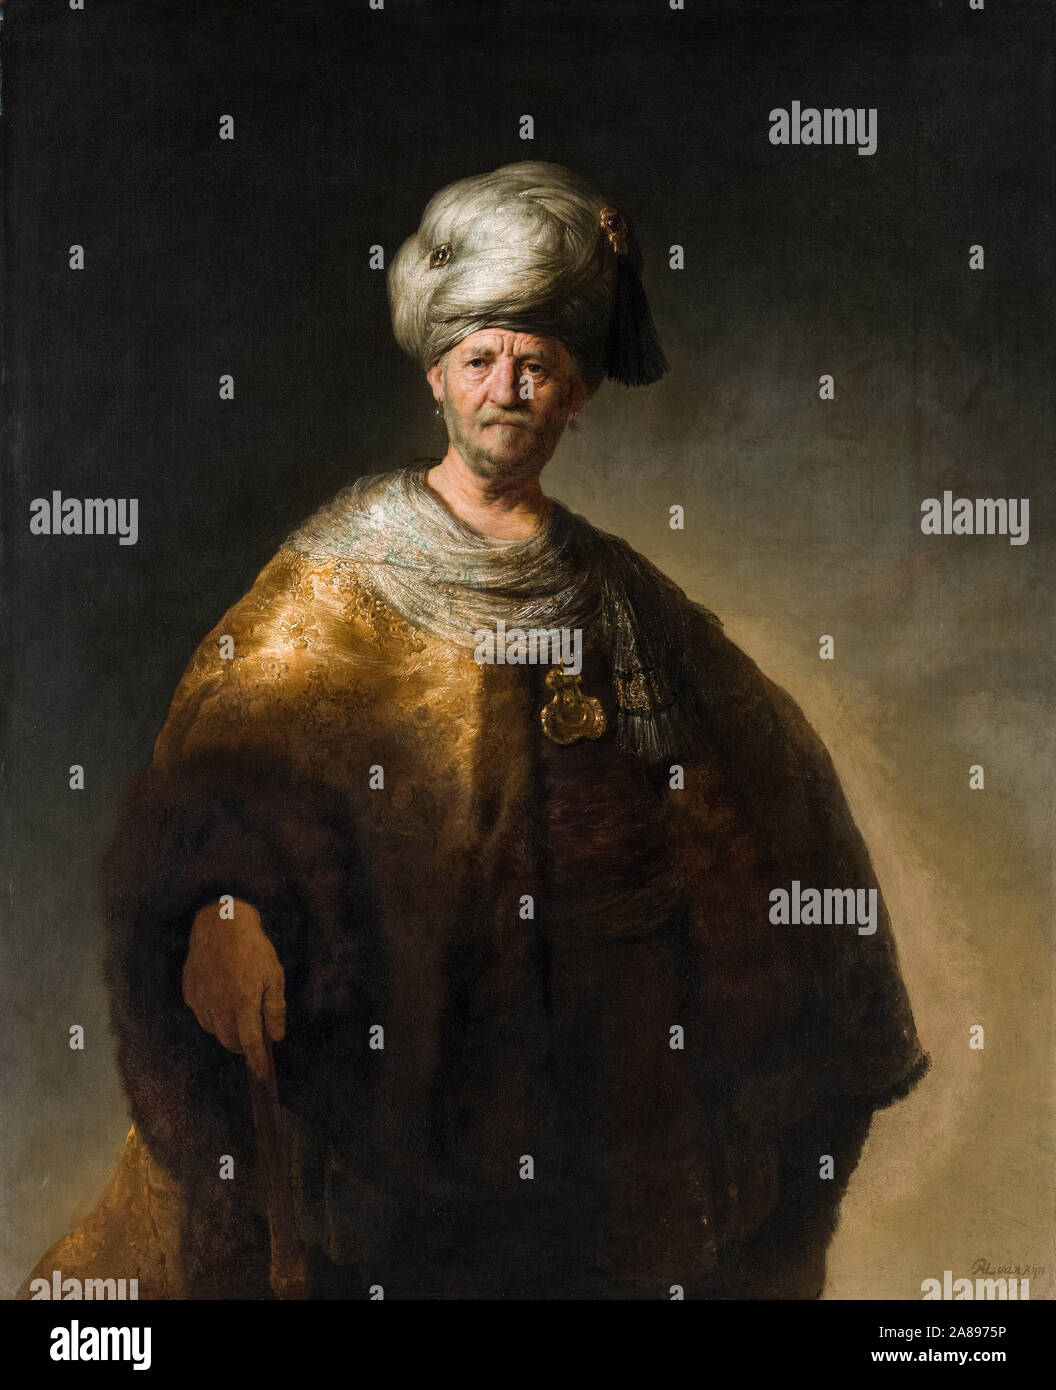 Rembrandt van Rijn, Mann im Orientalischen kostüm, (Der edle Slawischen), Portrait Malerei, 1632 Stockfoto